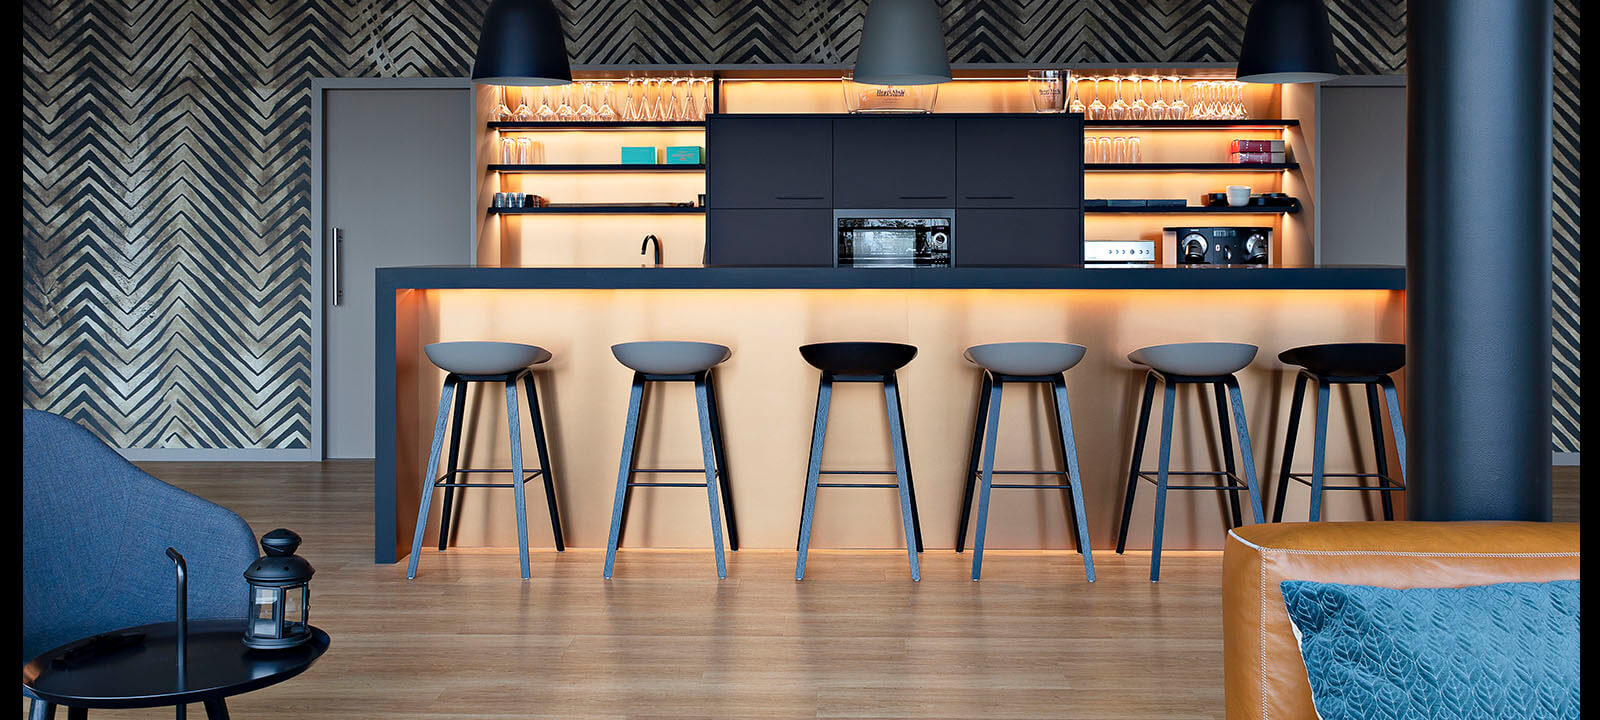 reportage photo haut de gamme espace cuisine tertiaire moderne cuivre réalisée par Meril menuiserie gwenaelle hoyet